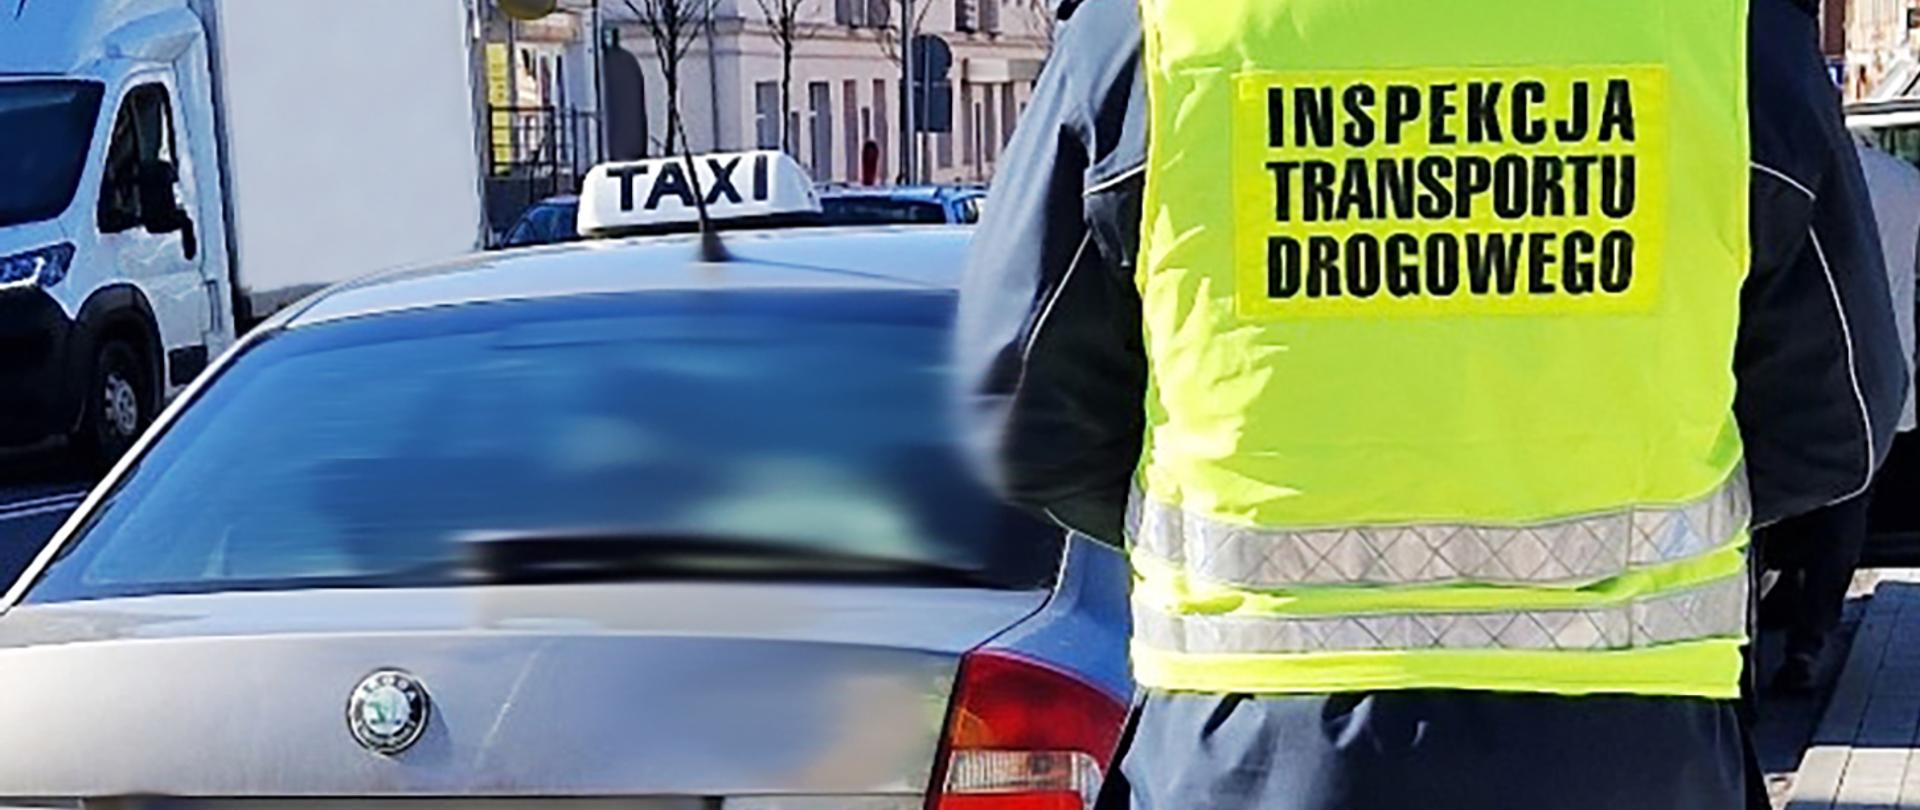 Taksówka skontrolowana przez lubuski patrol, składający się z inspektora ITD i funkcjonariusza Policji
